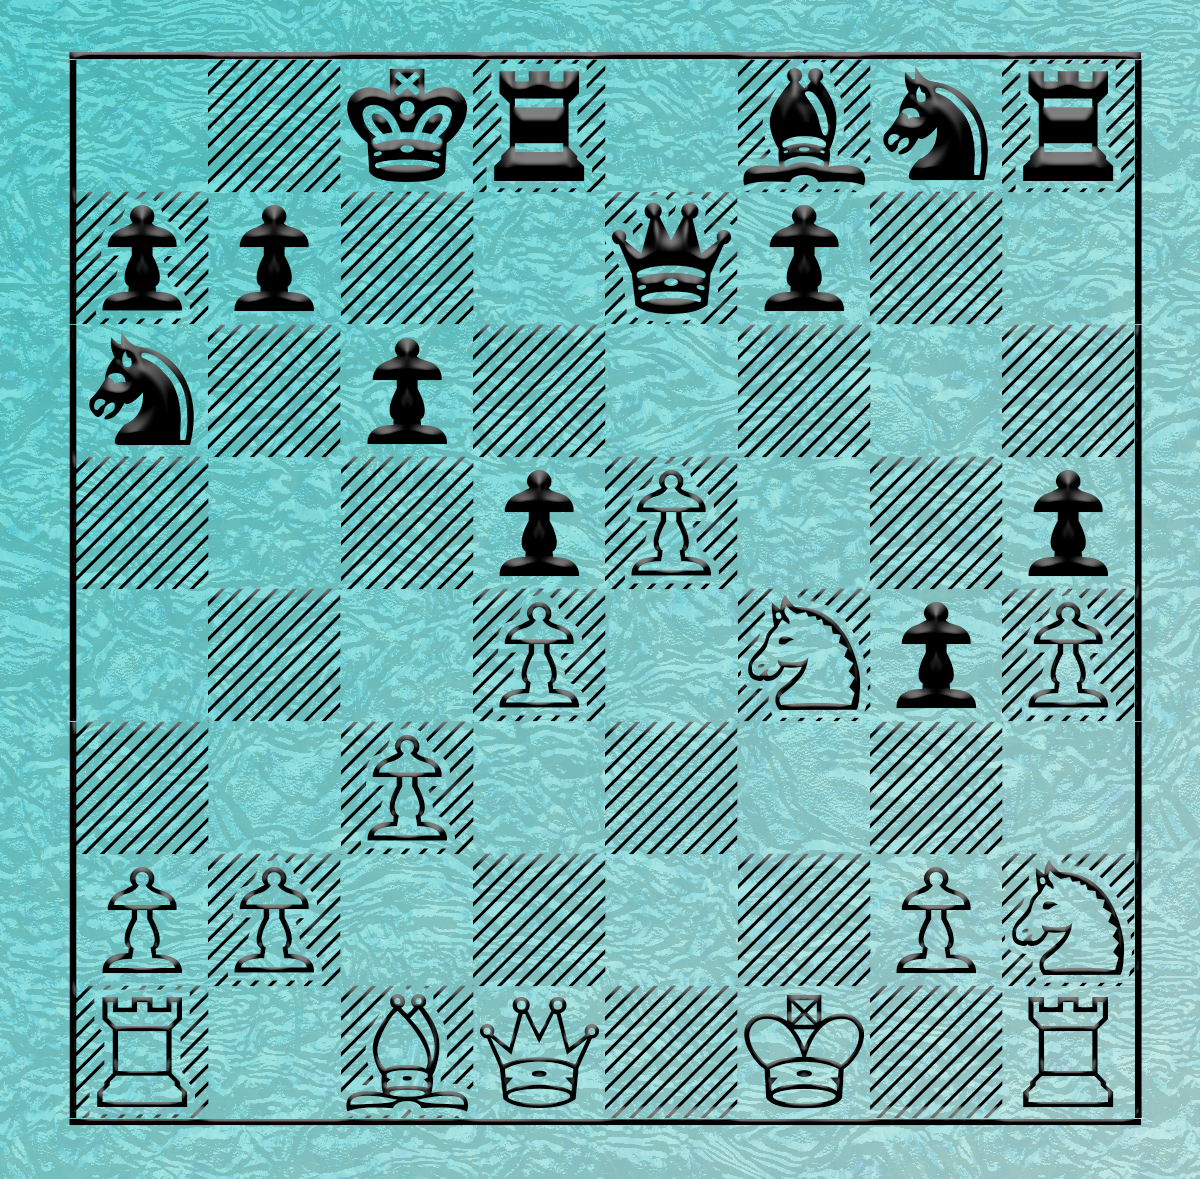 gambit – The Gambit Chess Player